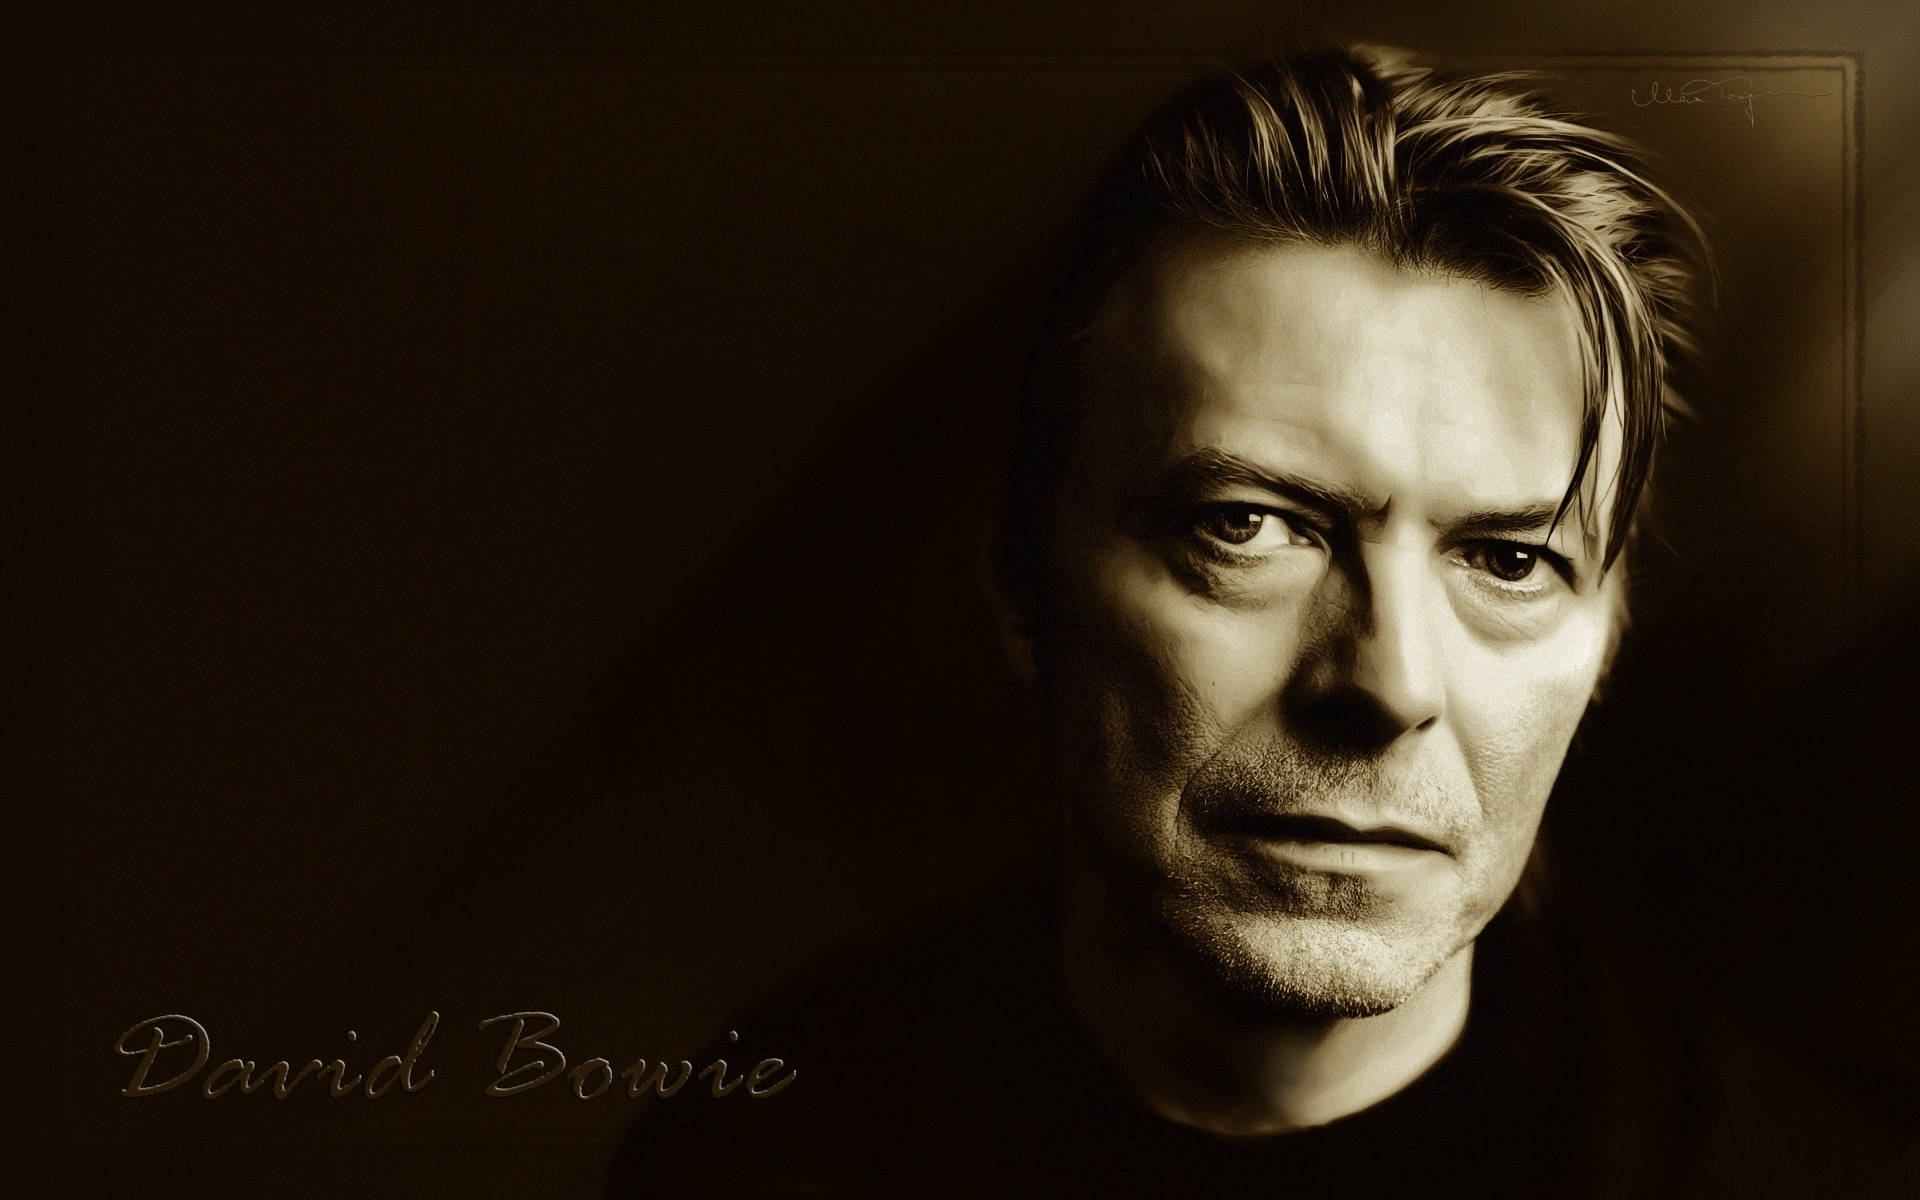 David Bowie Background